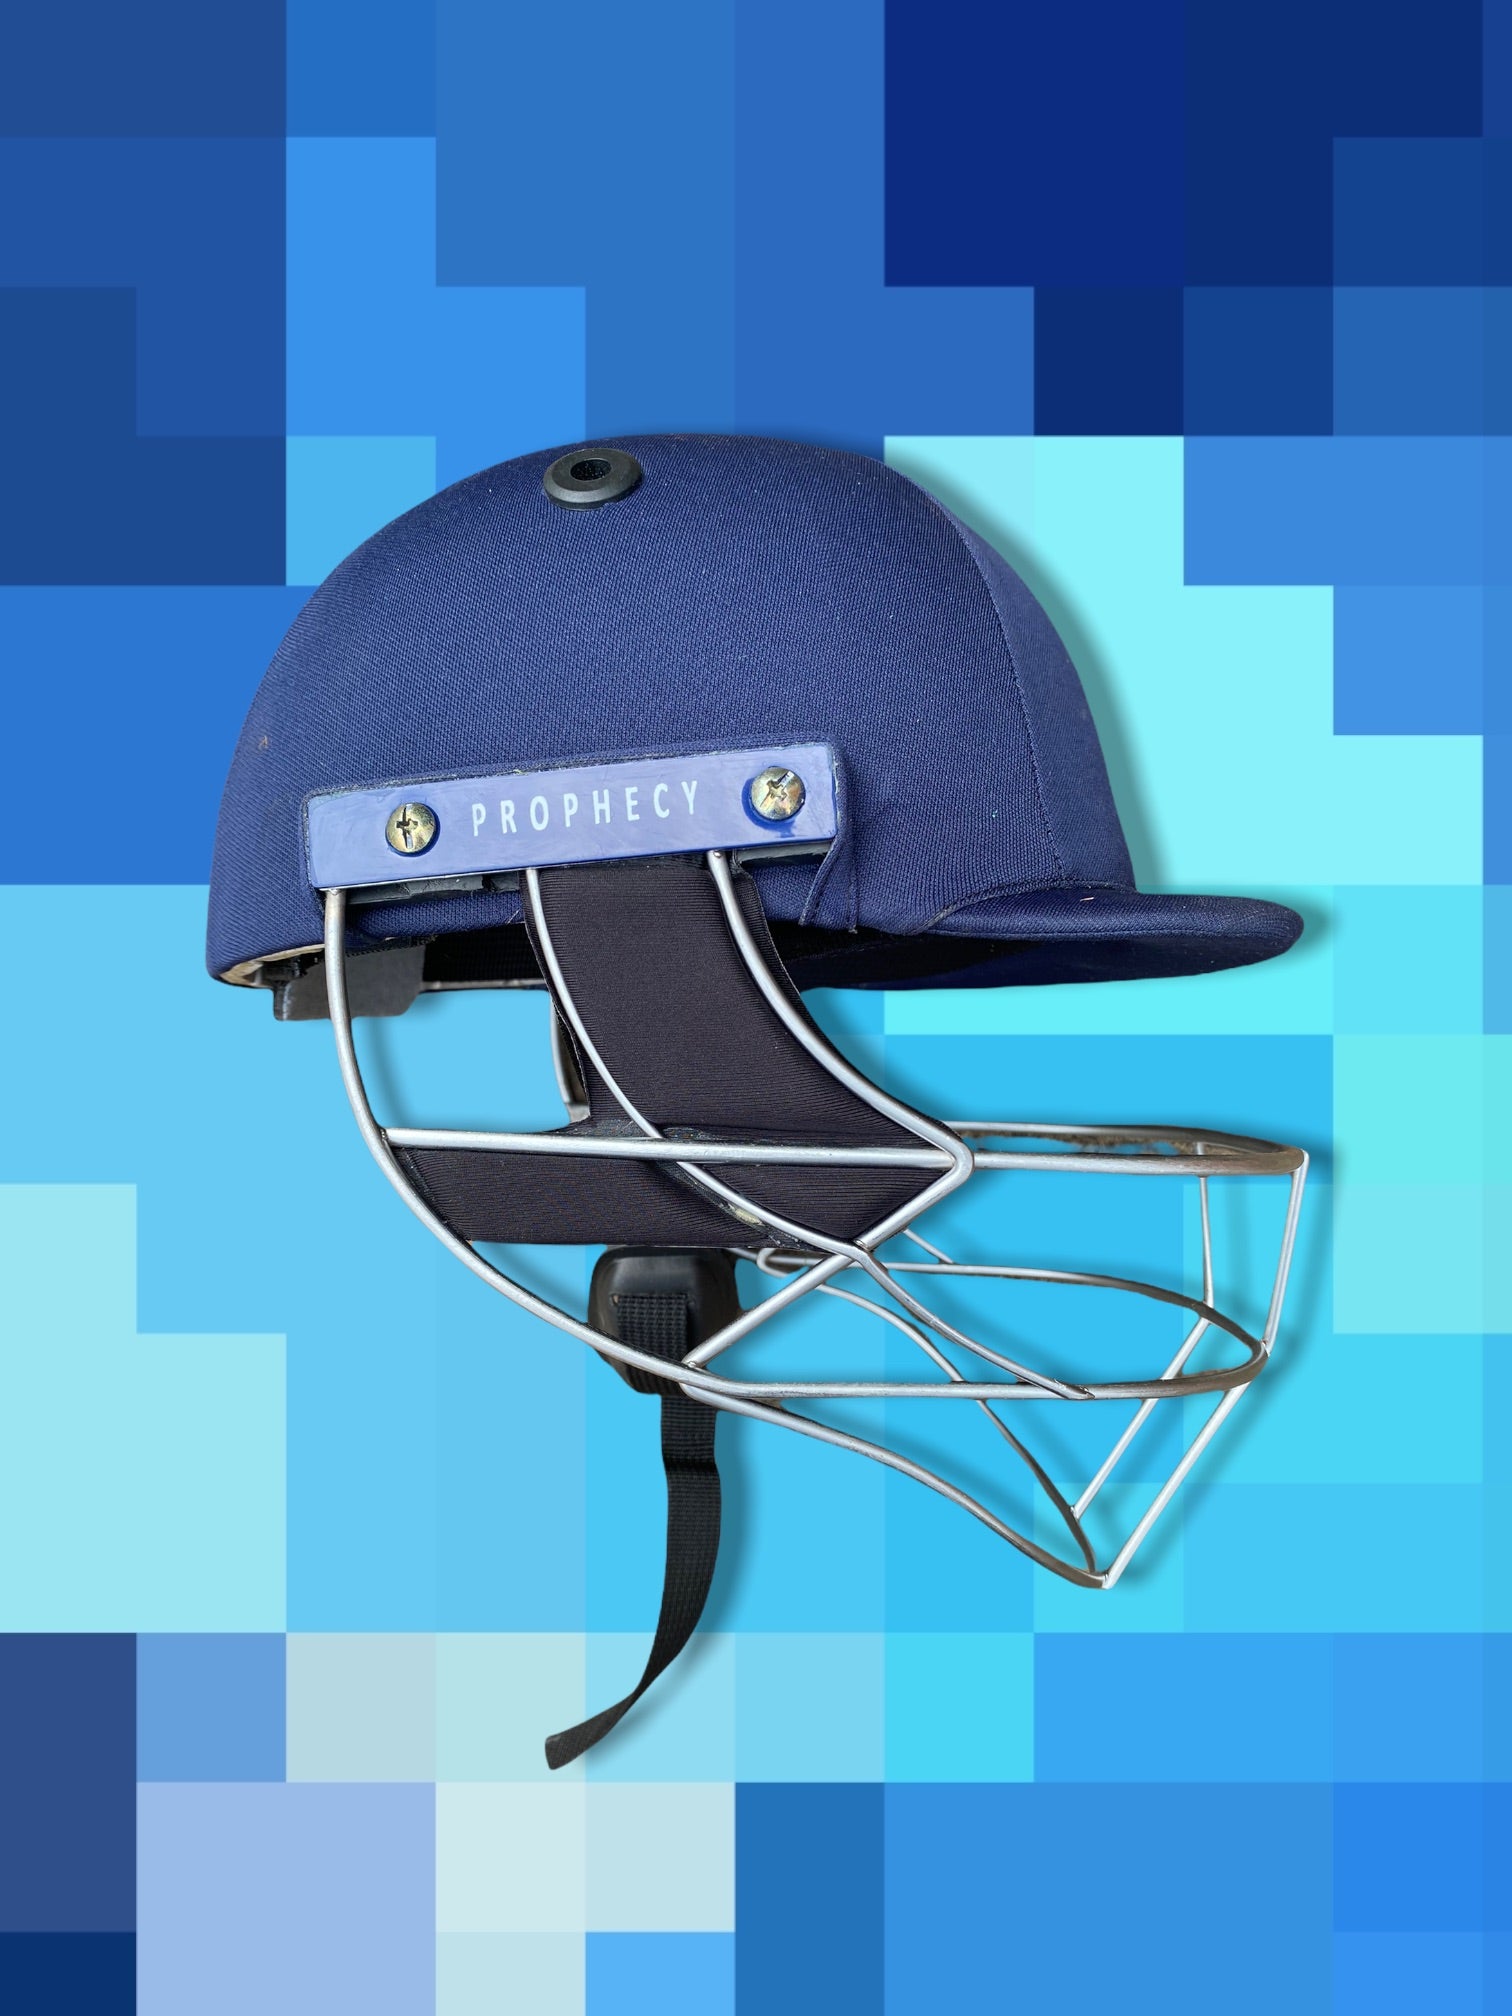 Comfy cricket helmet